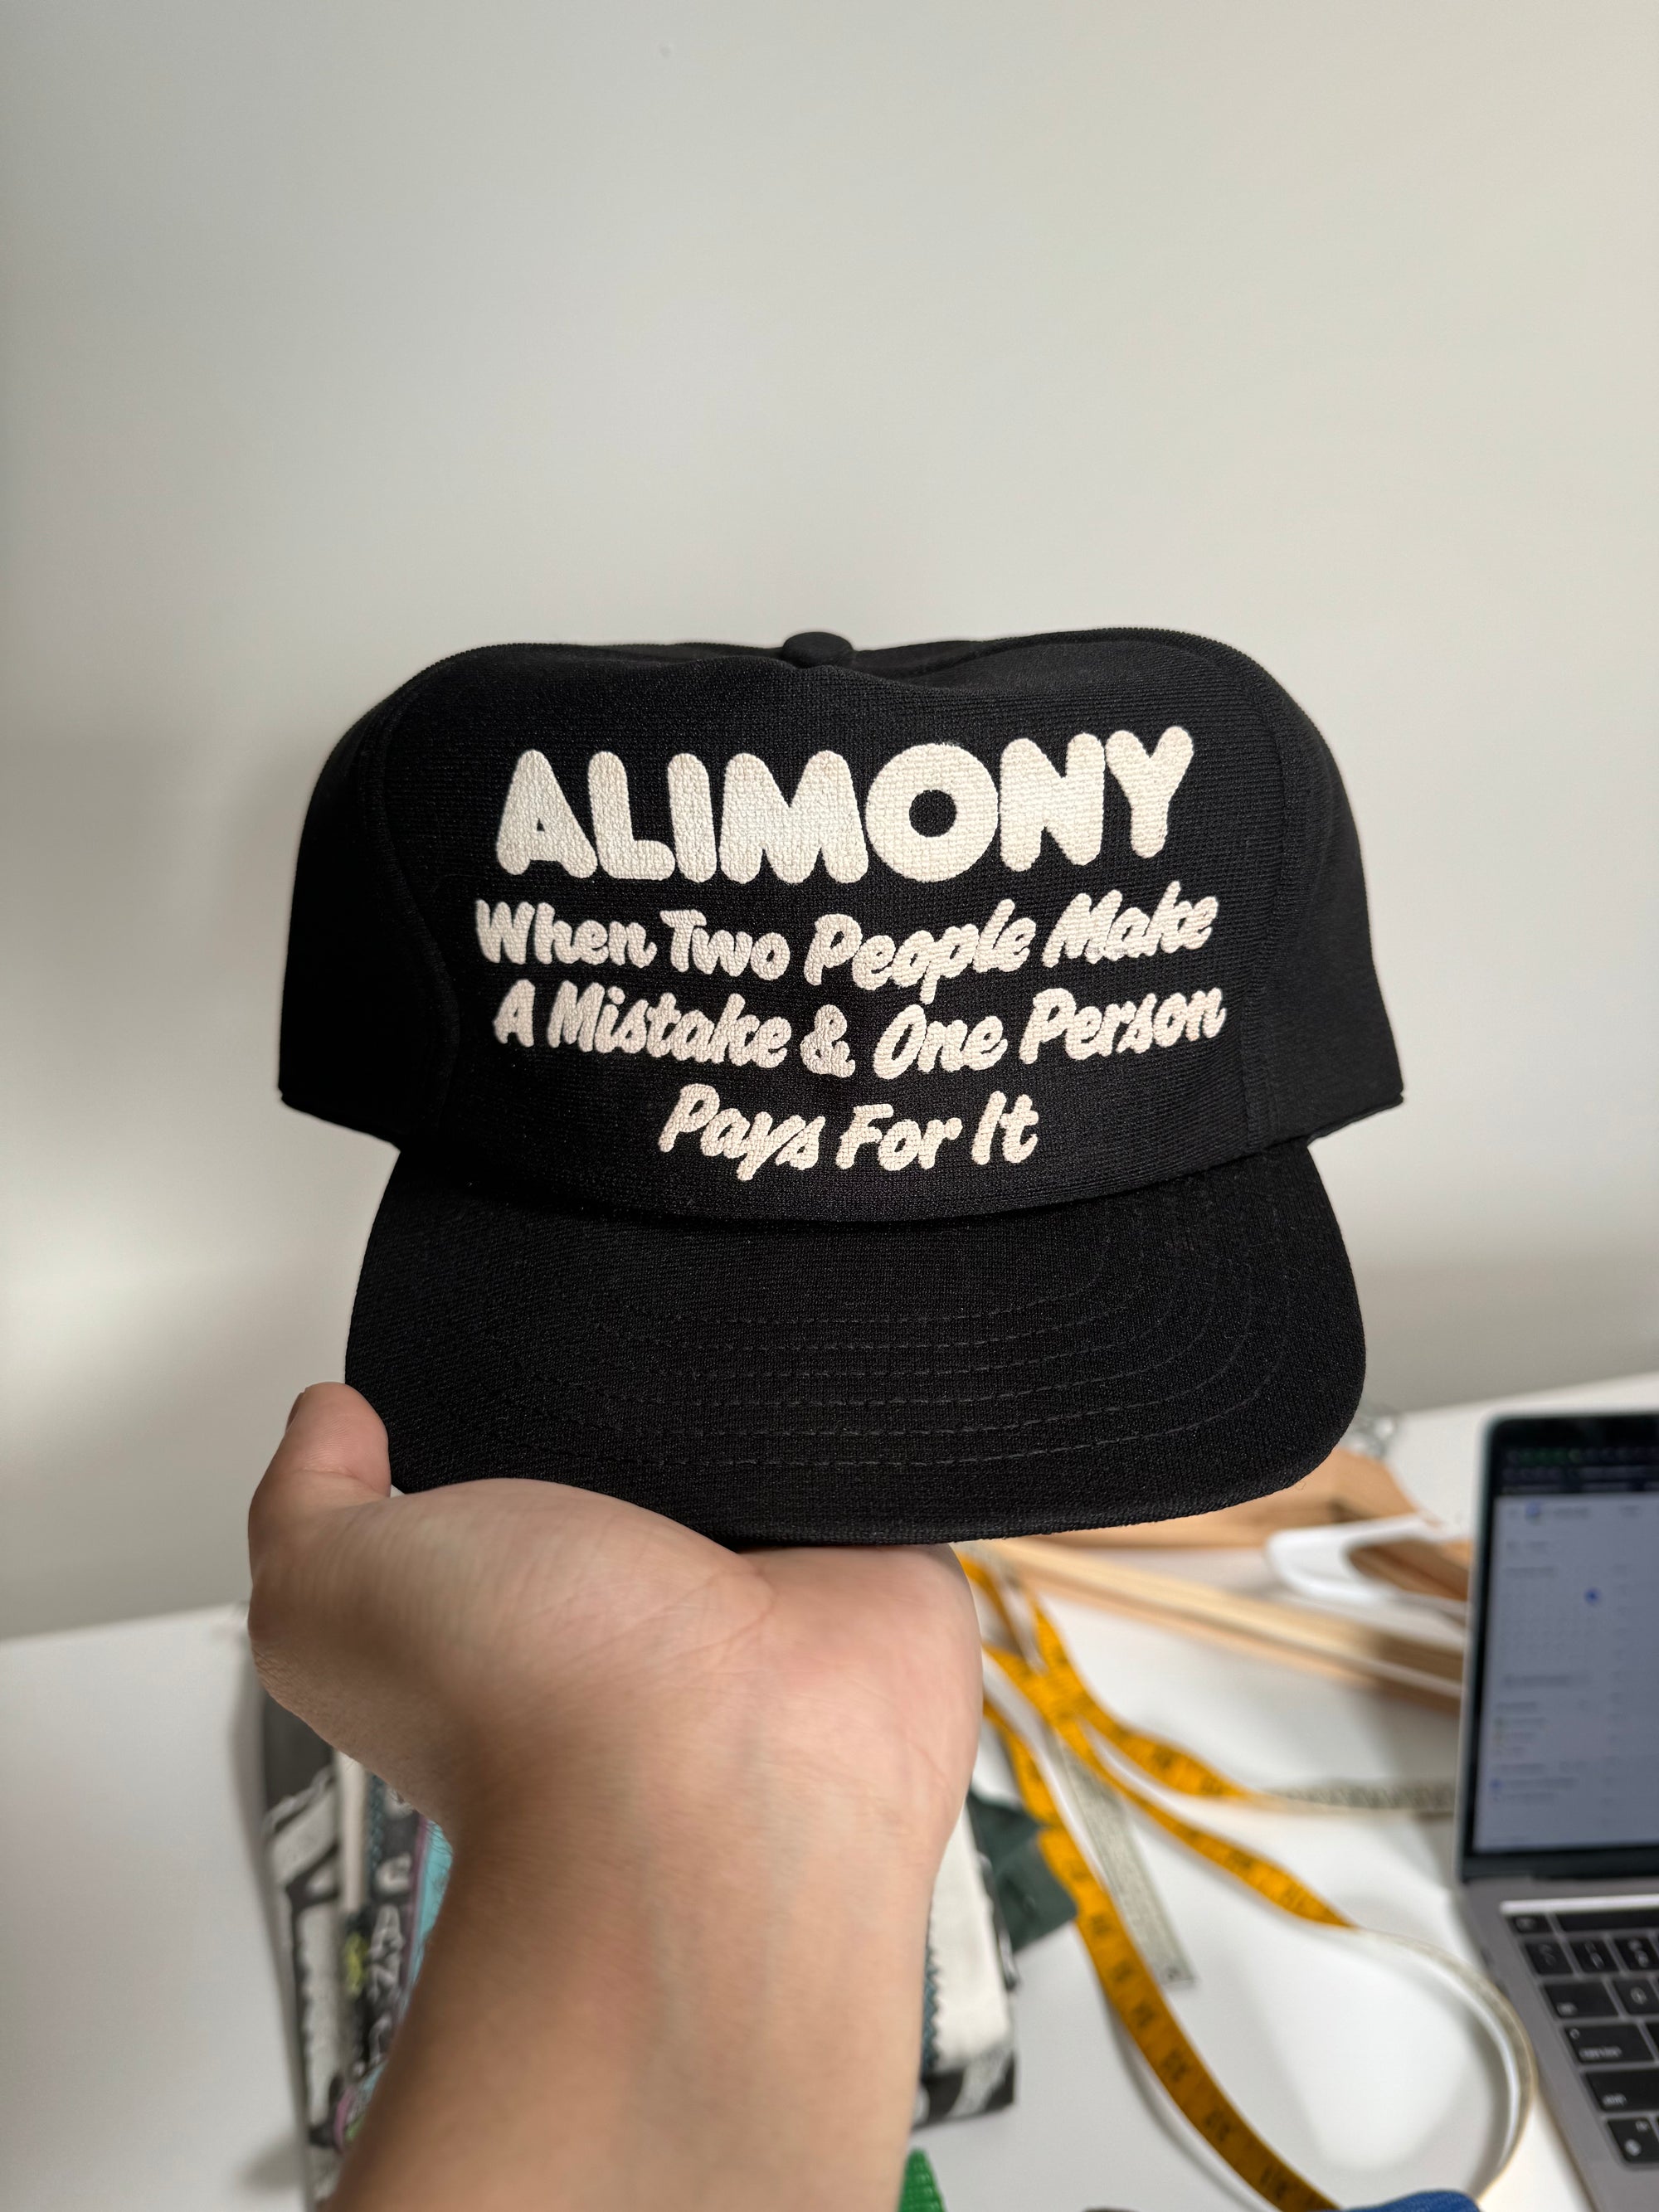 1980s “Alimony” Trucker Hat